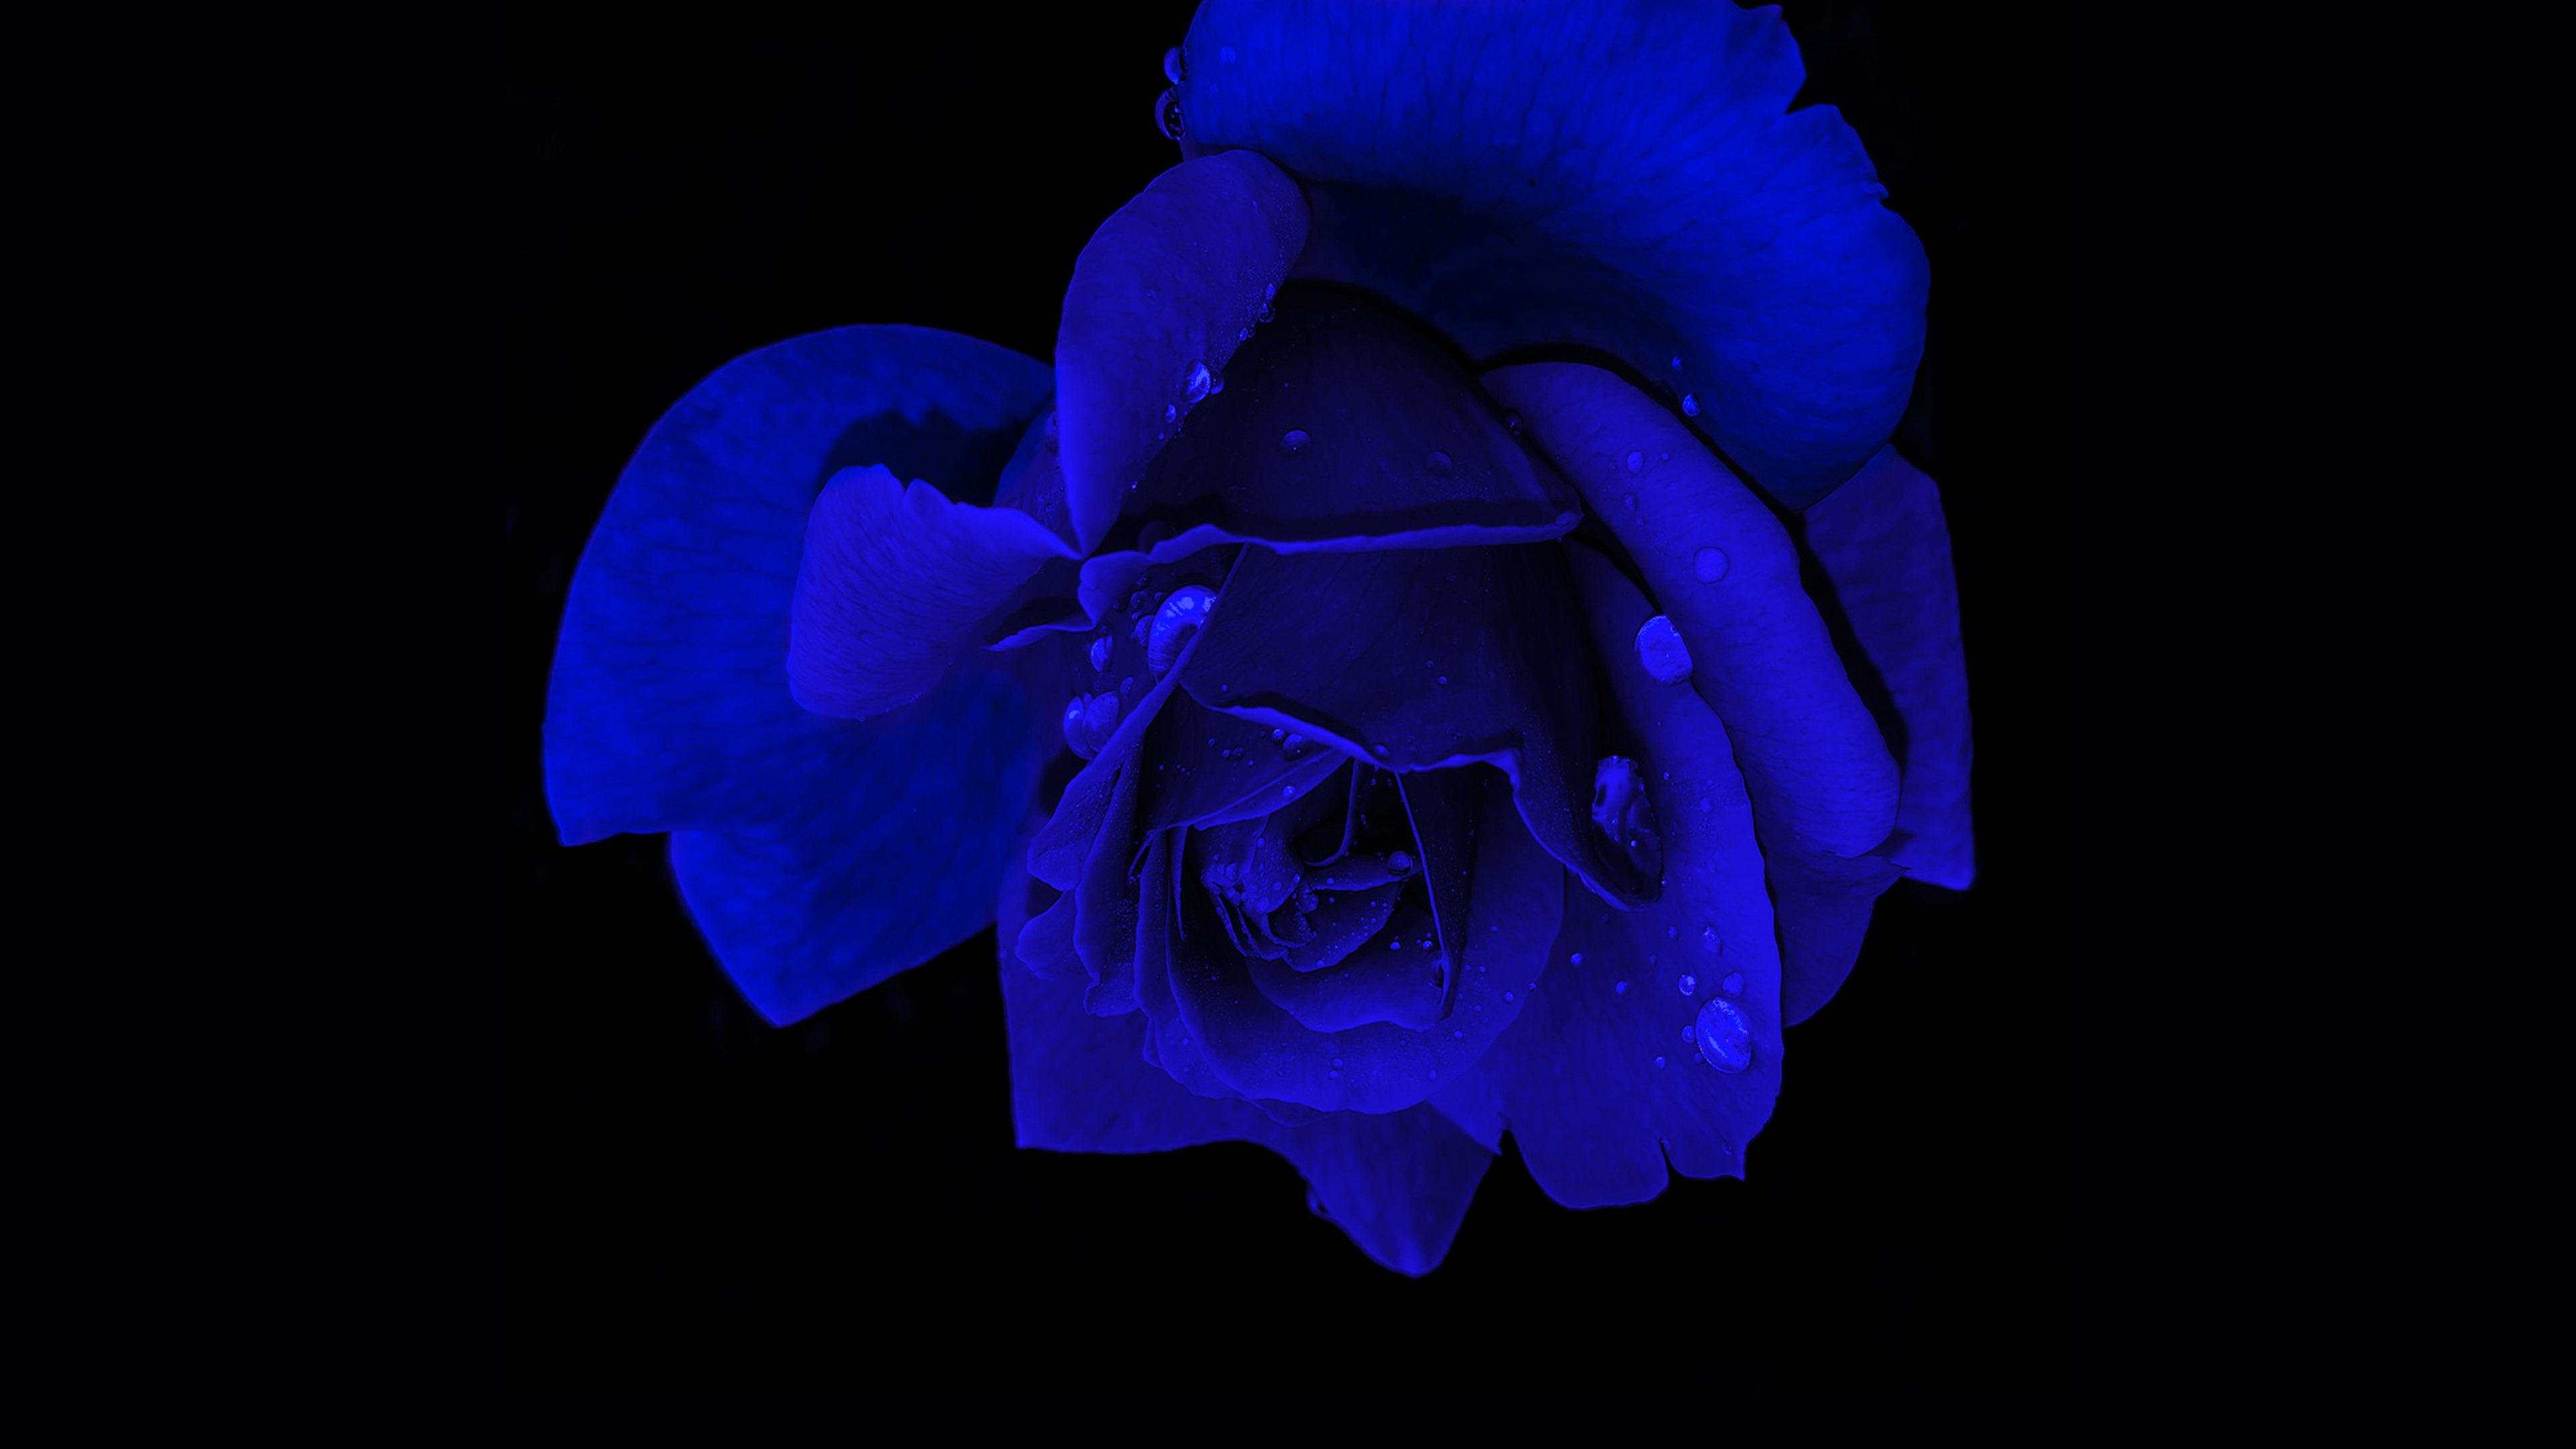 Blue rose Wallpaper 4K, Rose flower, Flowers, #8691